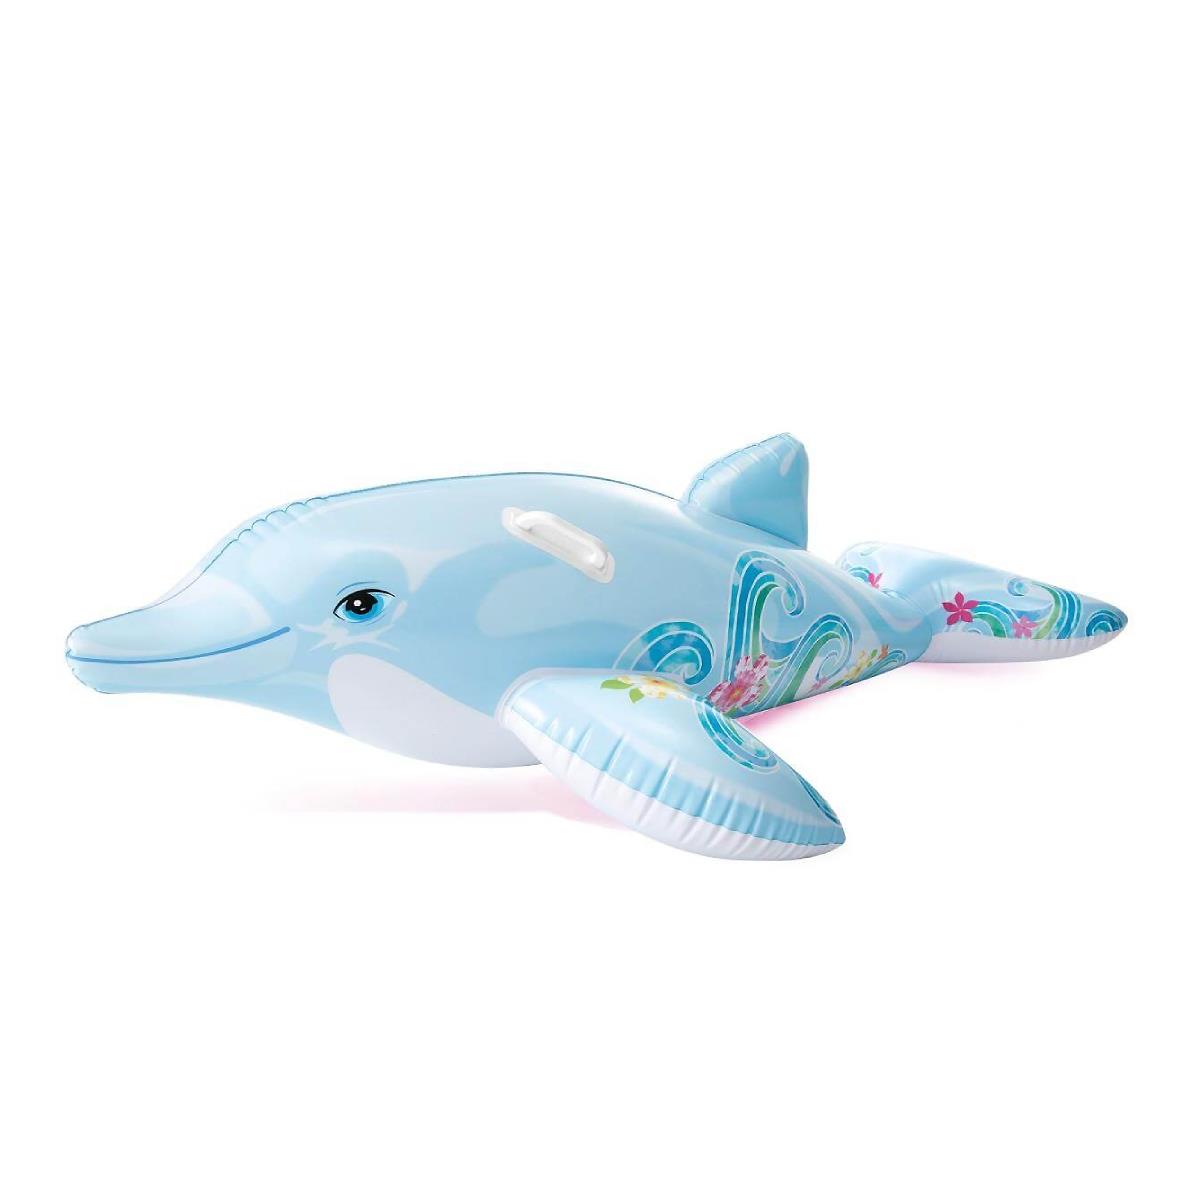 Игрушка надувная Дельфин (58535)  INTEX игрушка надувная со звуком